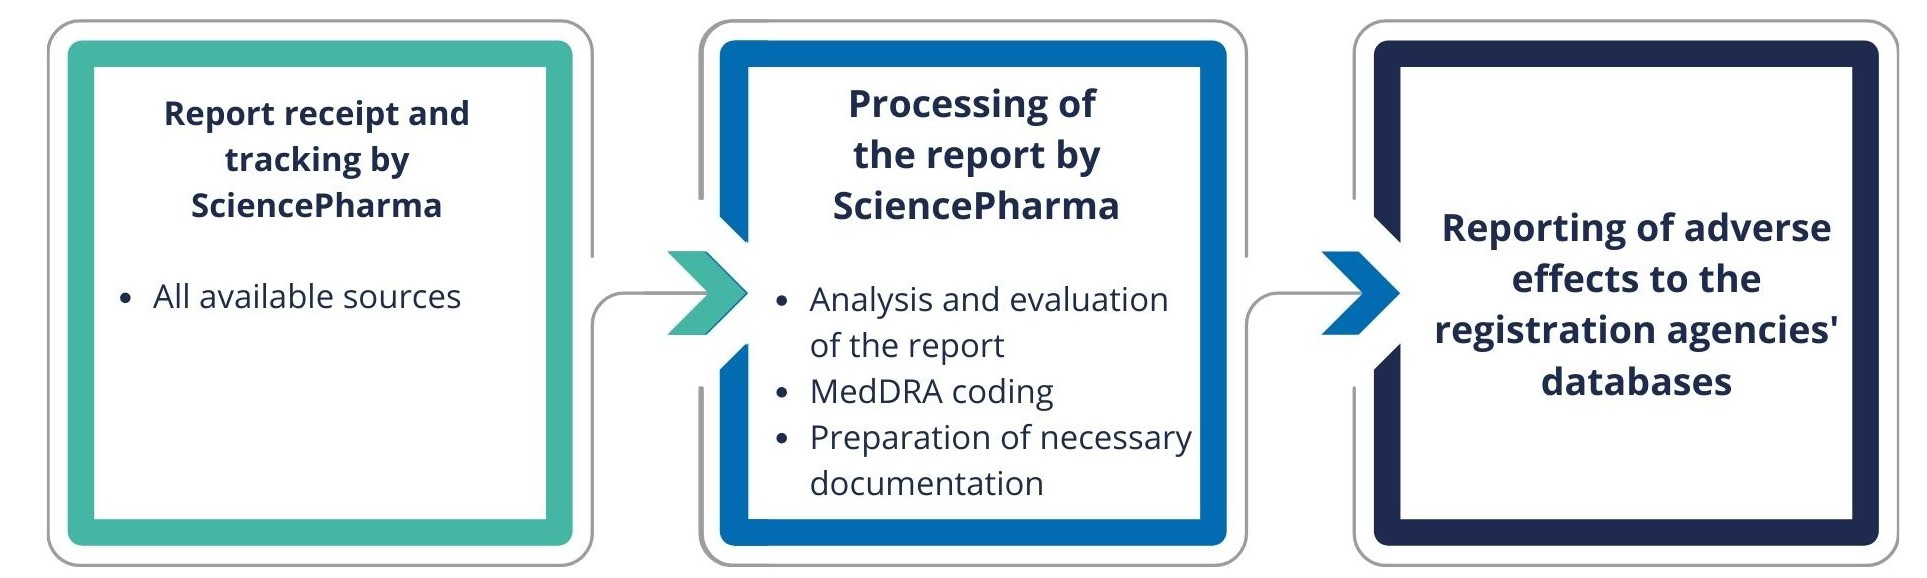 Pharmacovigilance system step by step.